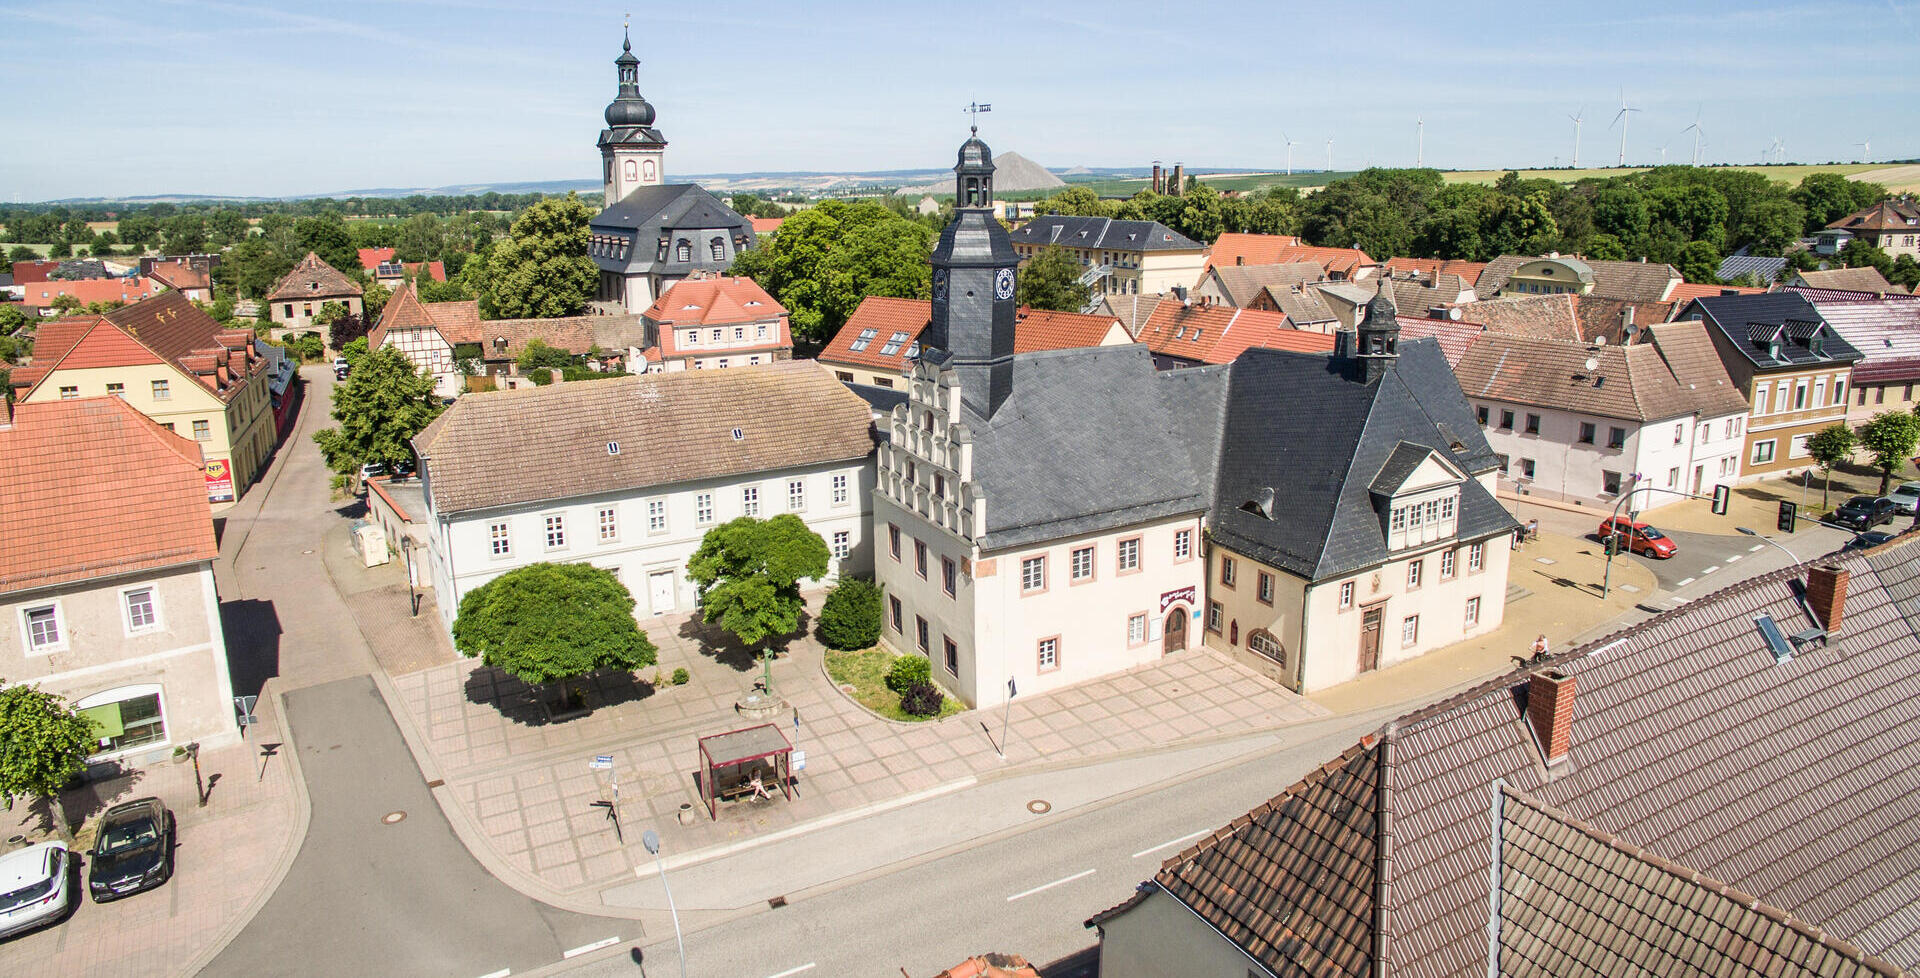 Blick auf das alte Rathaus Allstedt. St. Johannis im Hintergrund.